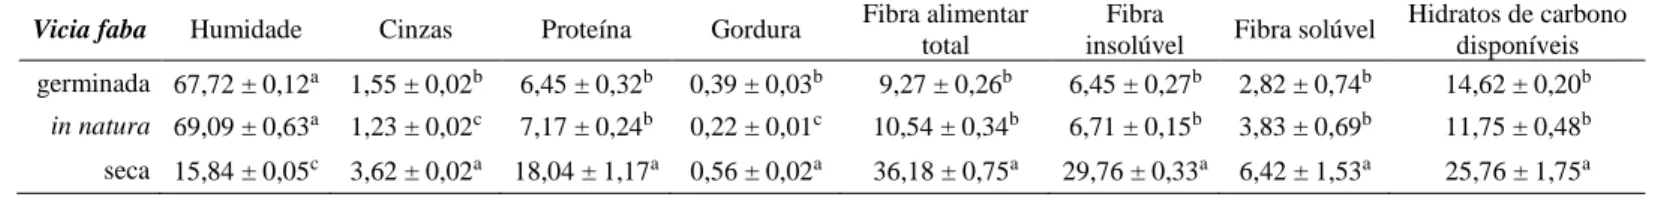 Tabela 5. Composição nutricional das sementes da espécie Vicia faba em diferentes  estados (média ± desvio-padrão; g/ 100 g de peso fresco)